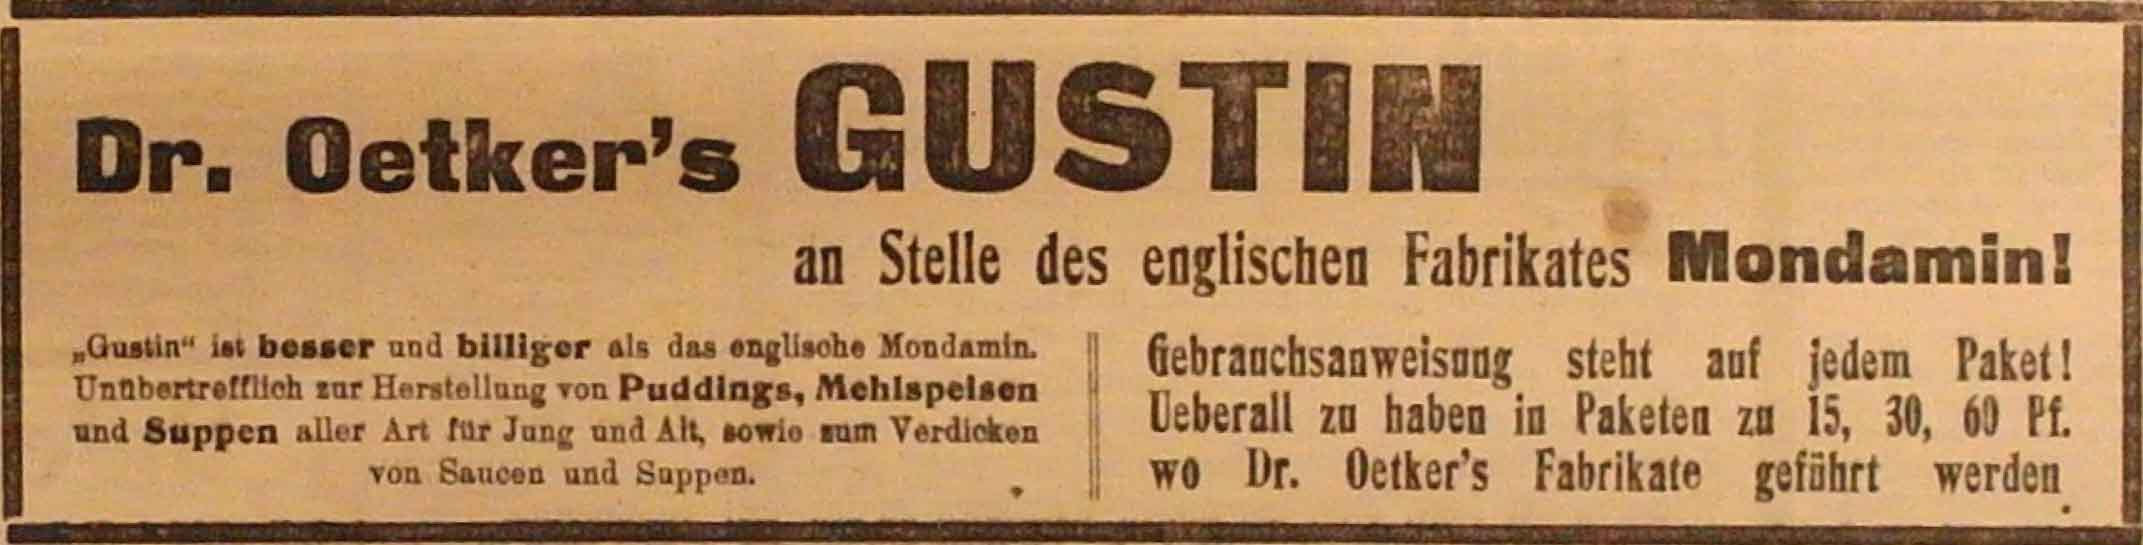 Anzeige im General-Anzeiger vom 6. November 1914